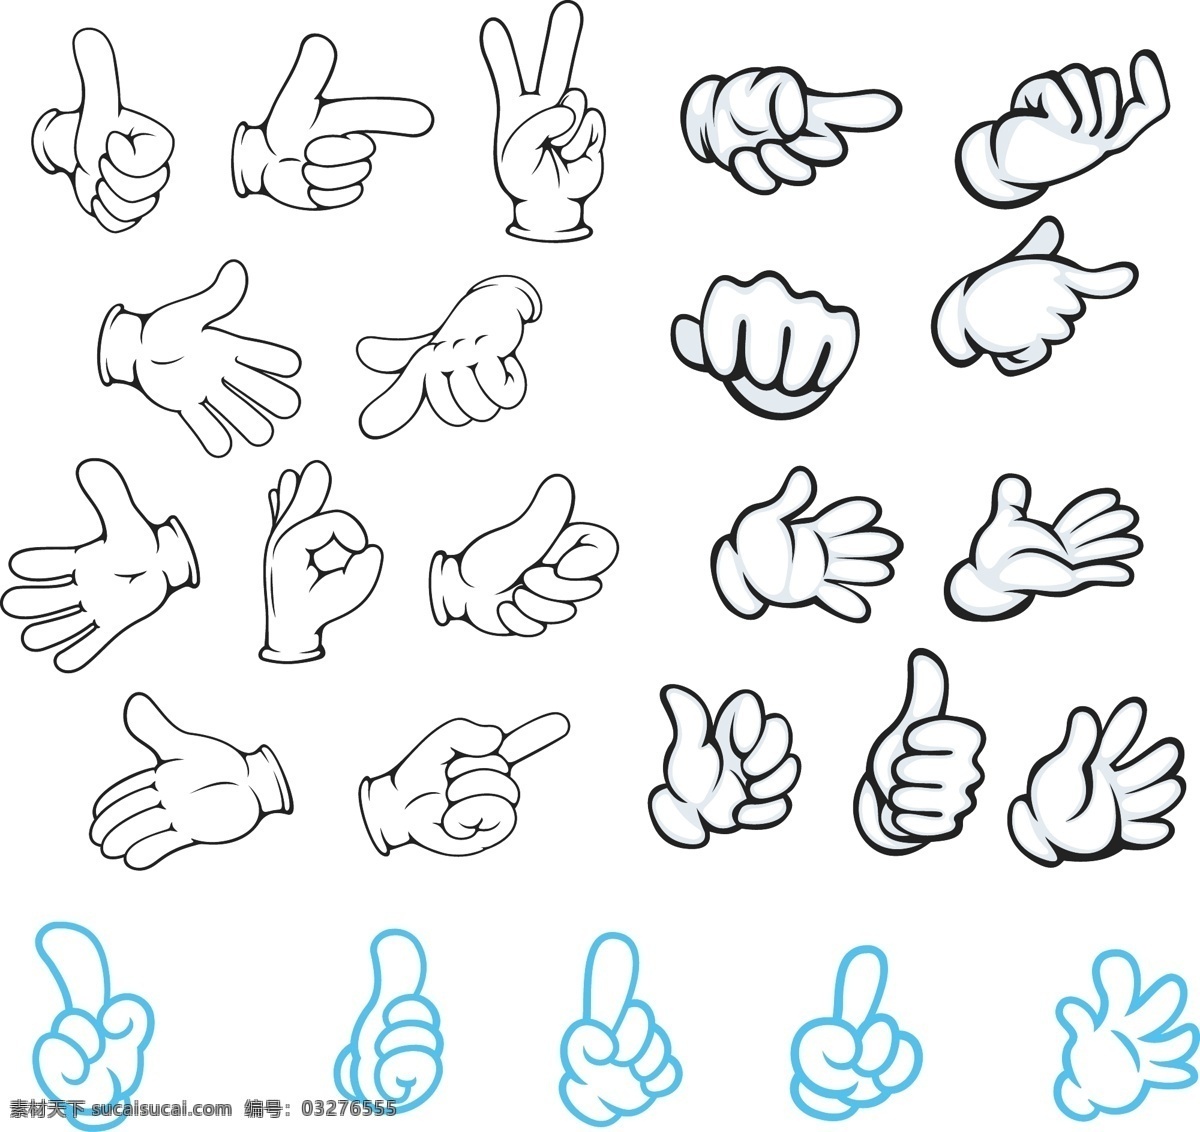 各种手势图 手势 卡通 拇指 手势造型 竖拇指 ok手势 赞